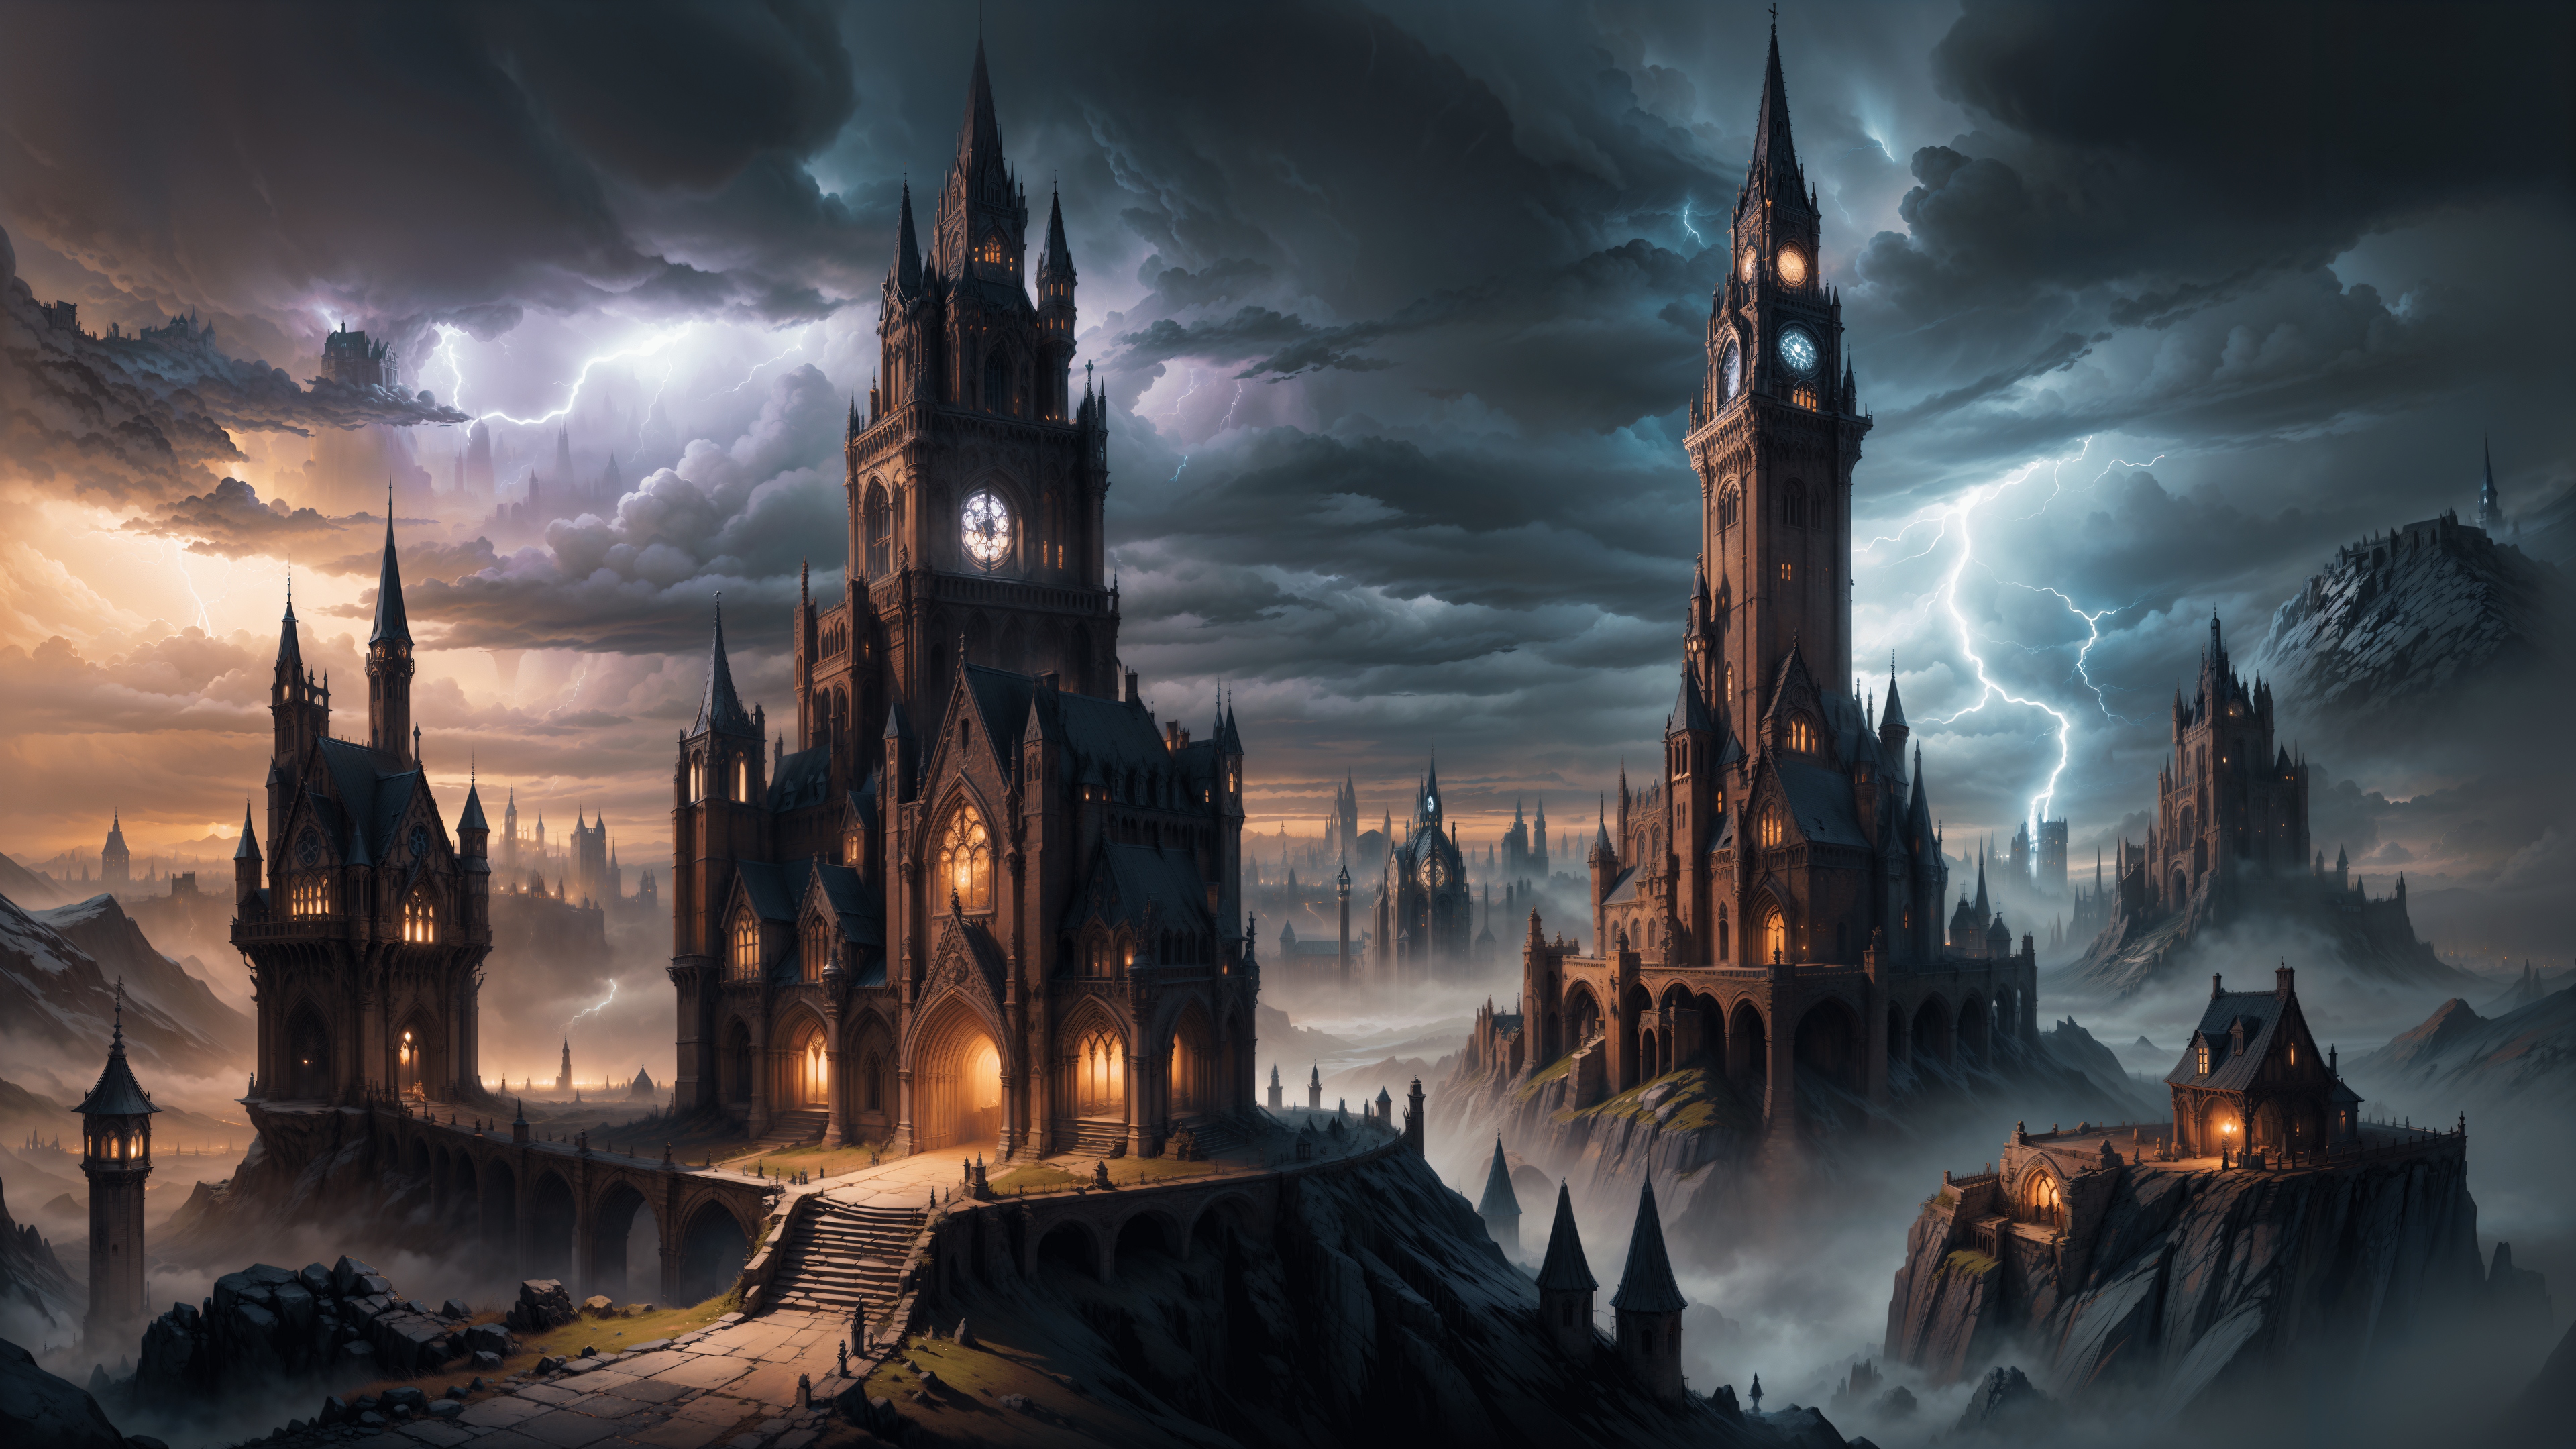 免费照片一个神话般的阴暗的宫殿与塔楼